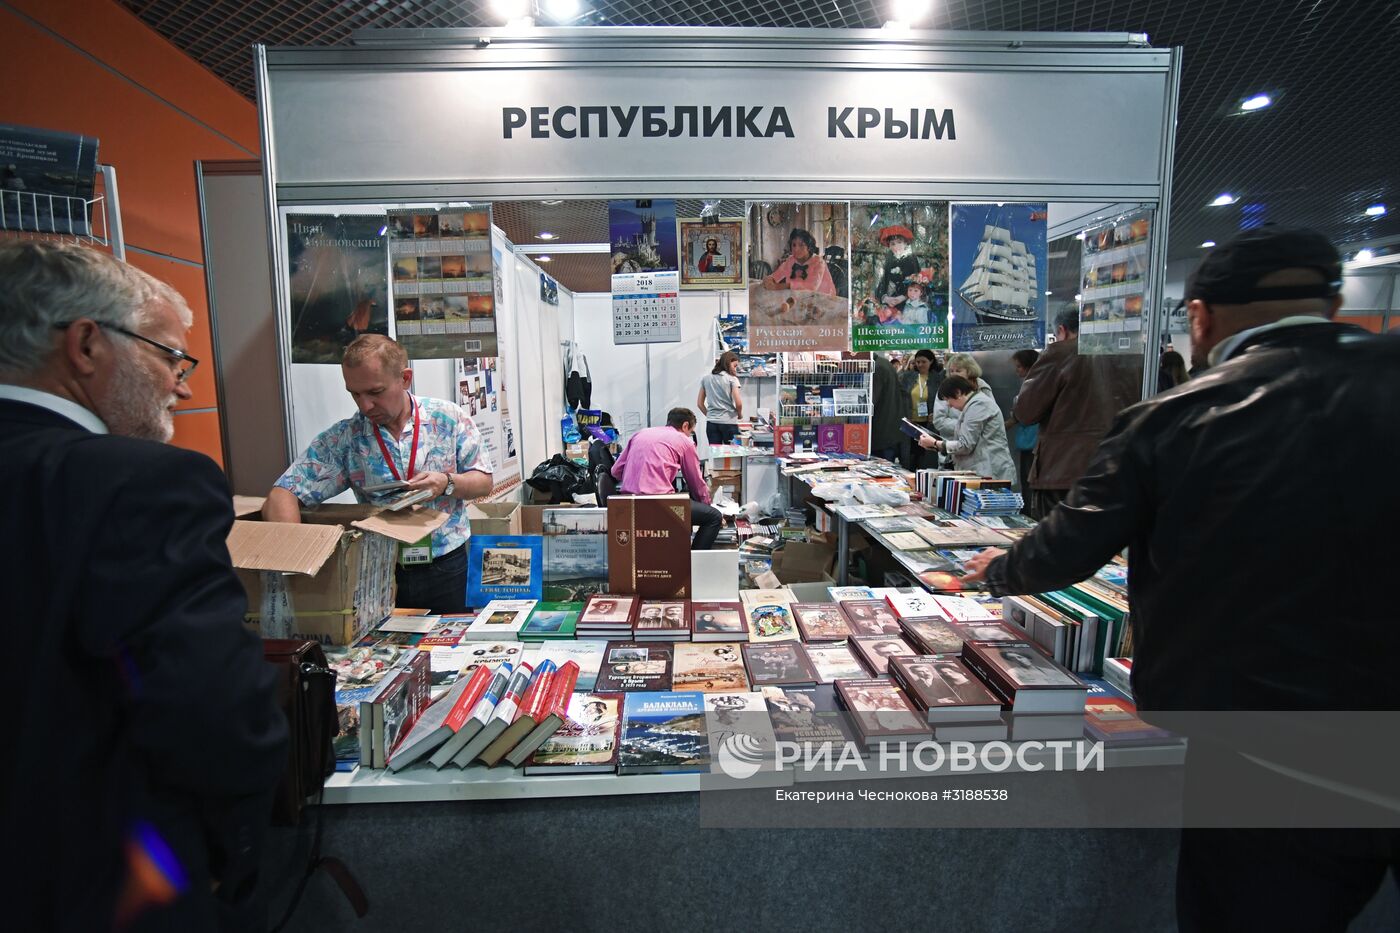 30-я Московская международная книжная выставка-ярмарка. День третий